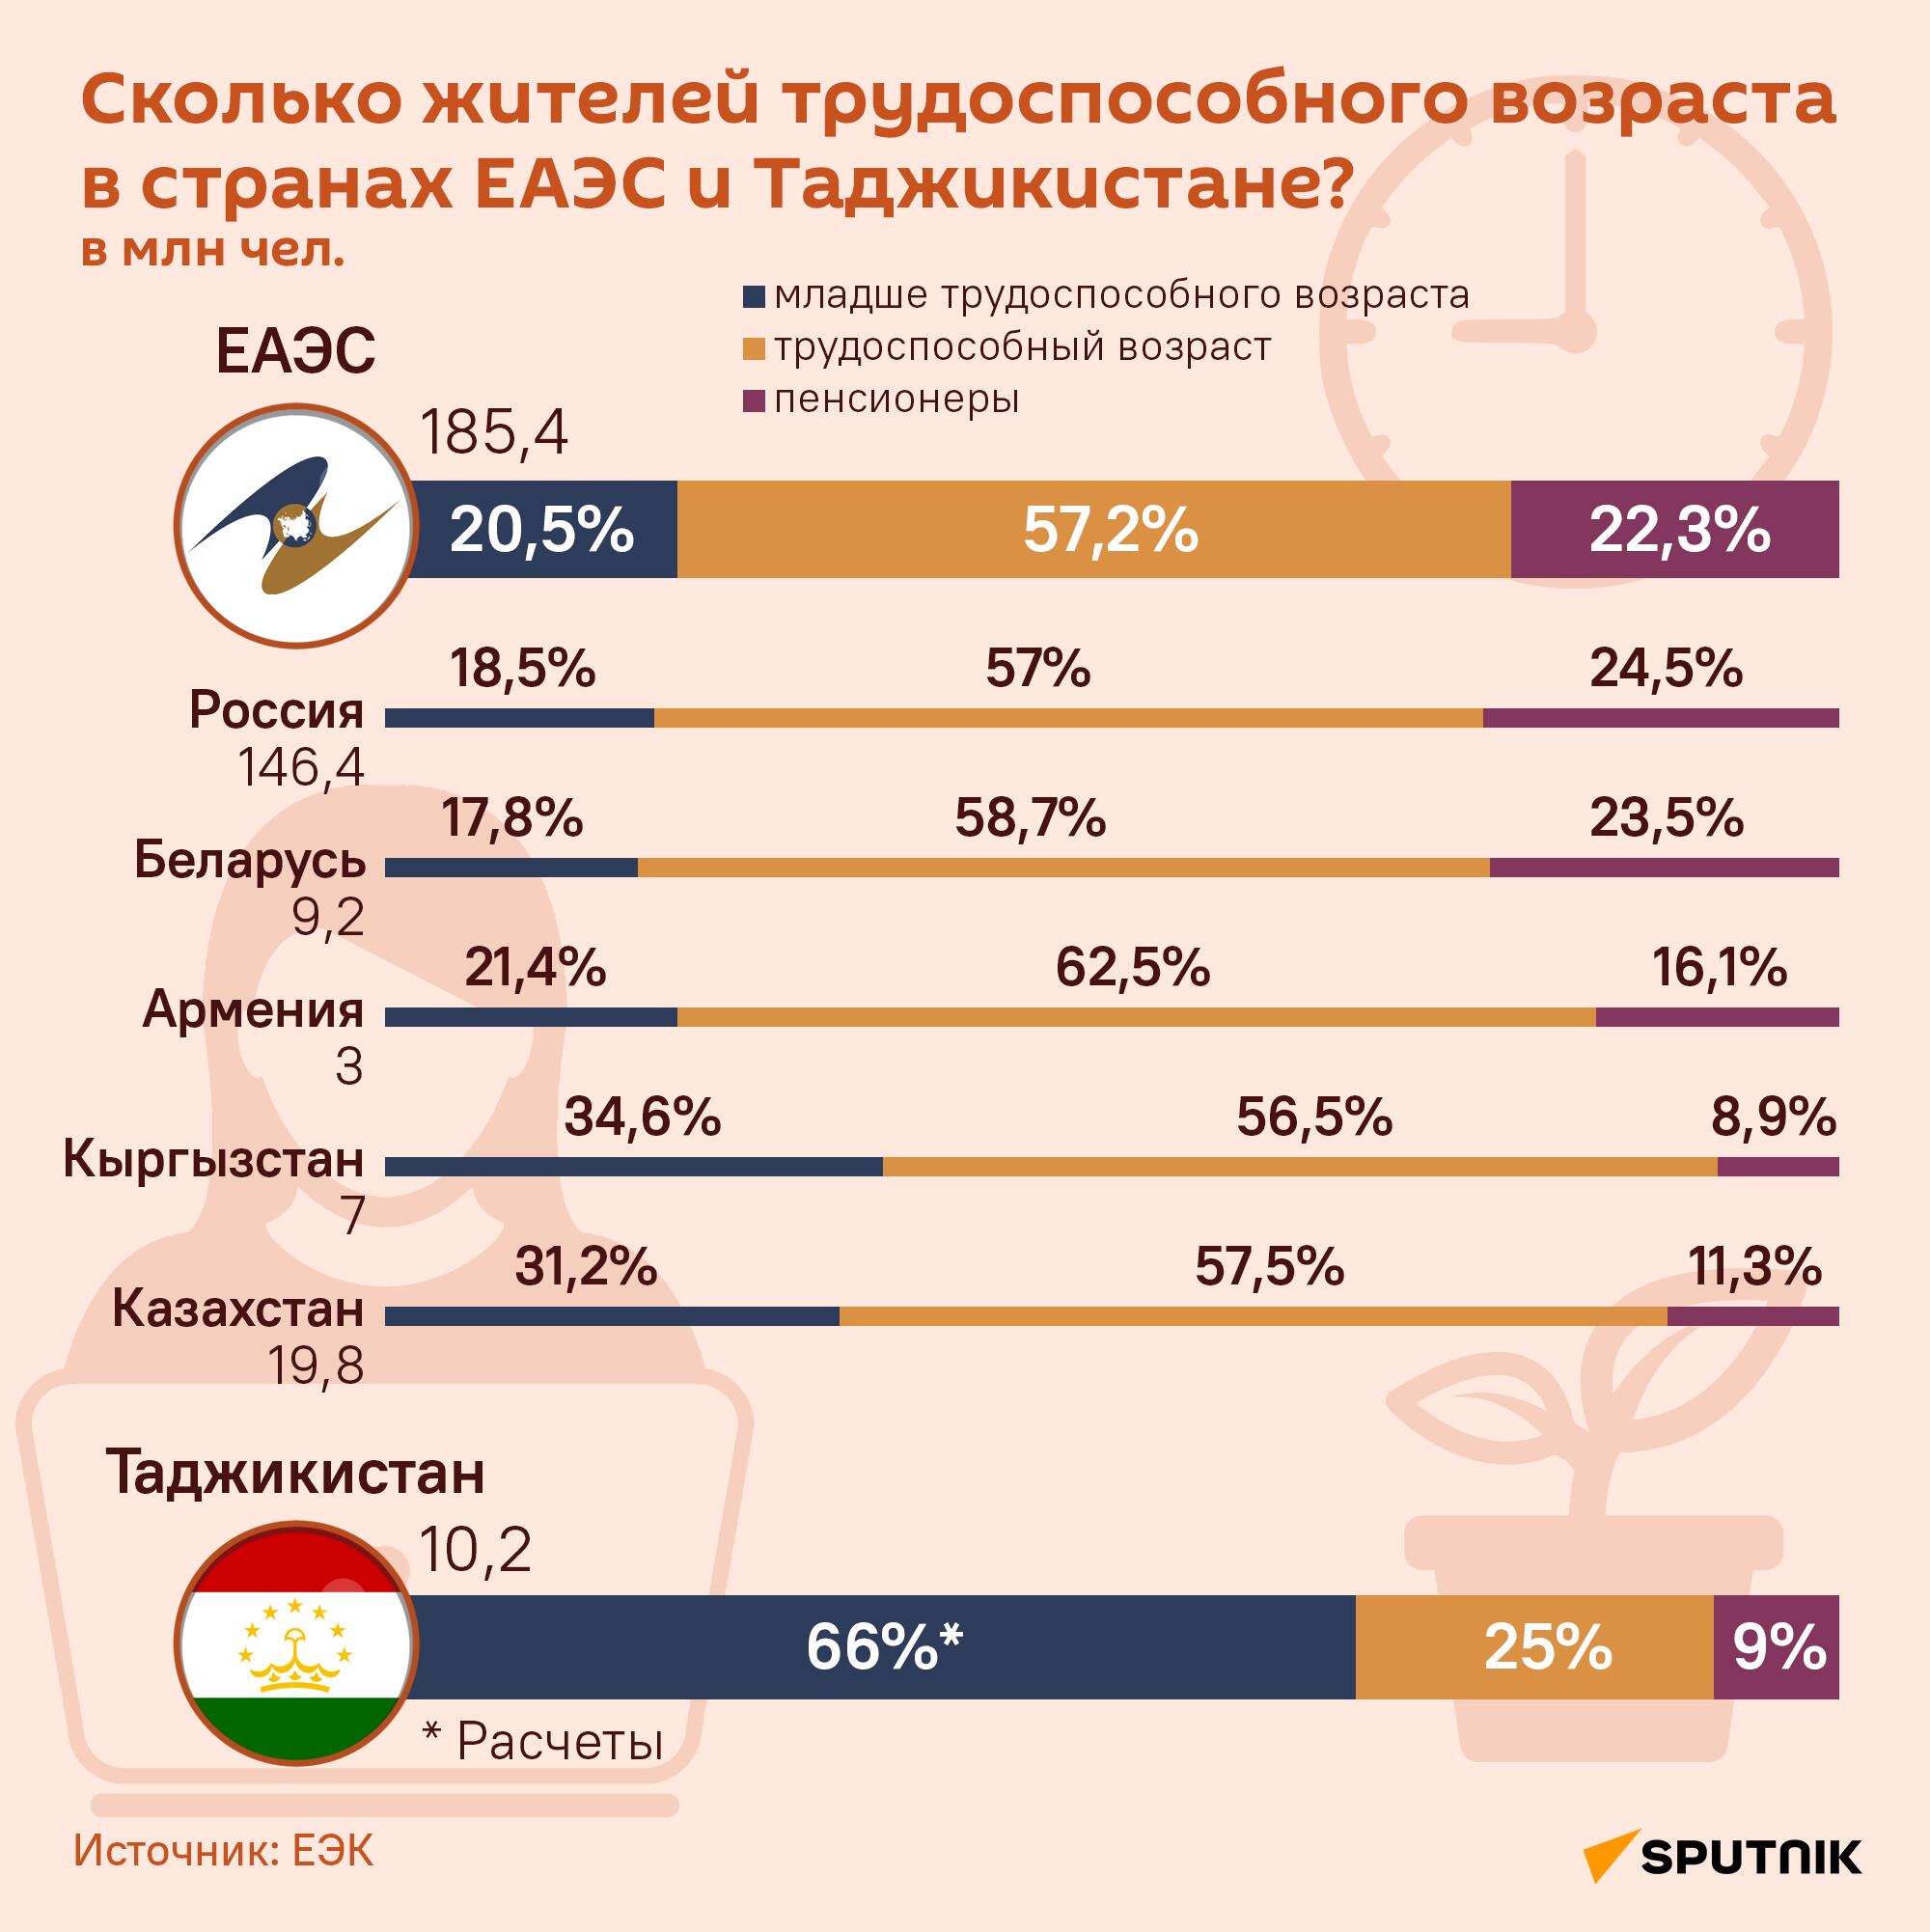 Сколько жителей трудоспособного возраста в странах ЕАЭС и Таджикистане? - Sputnik Таджикистан